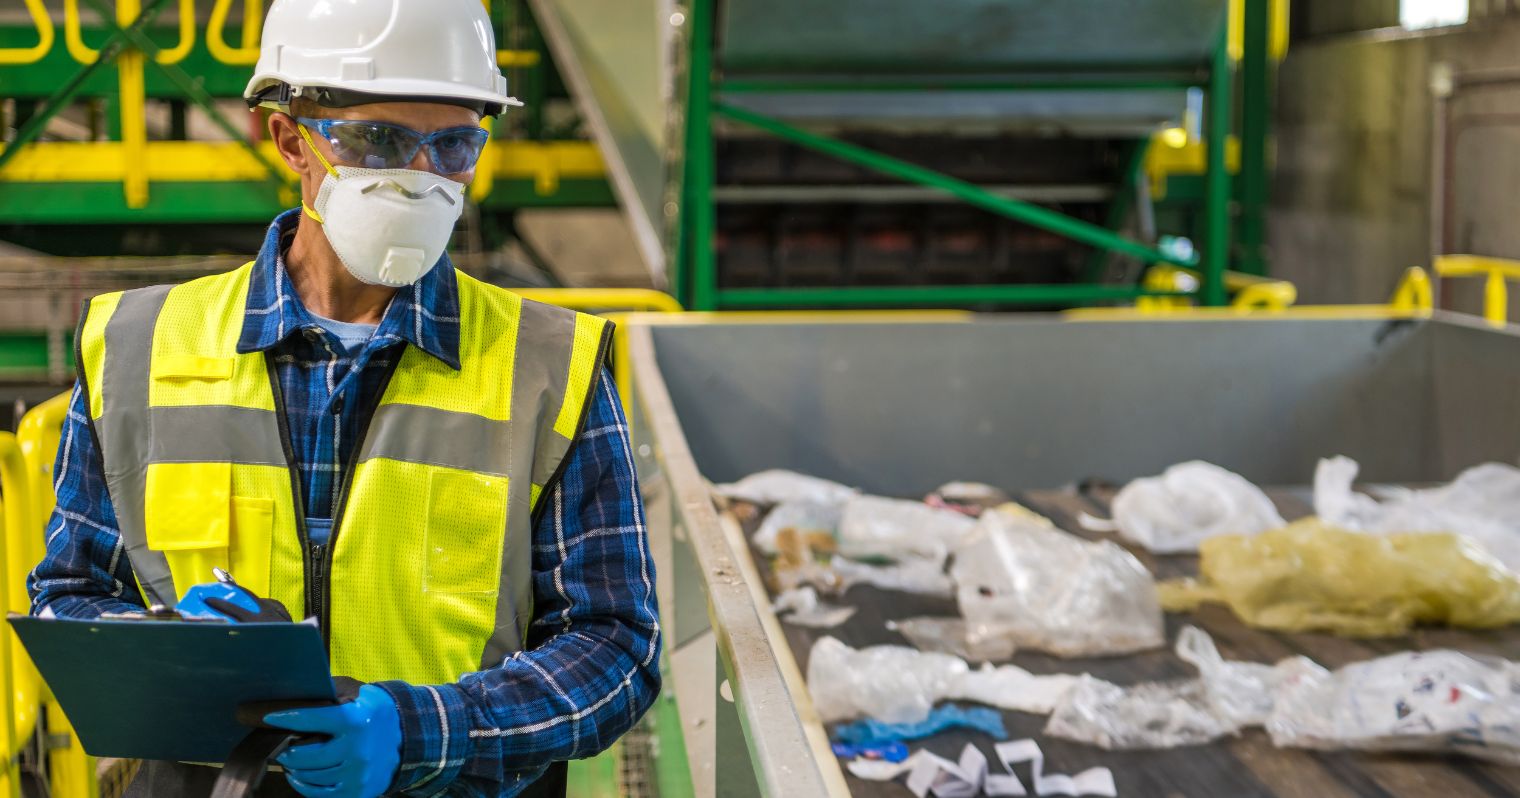 hulladékfeldolgozó munkatárs munka közben